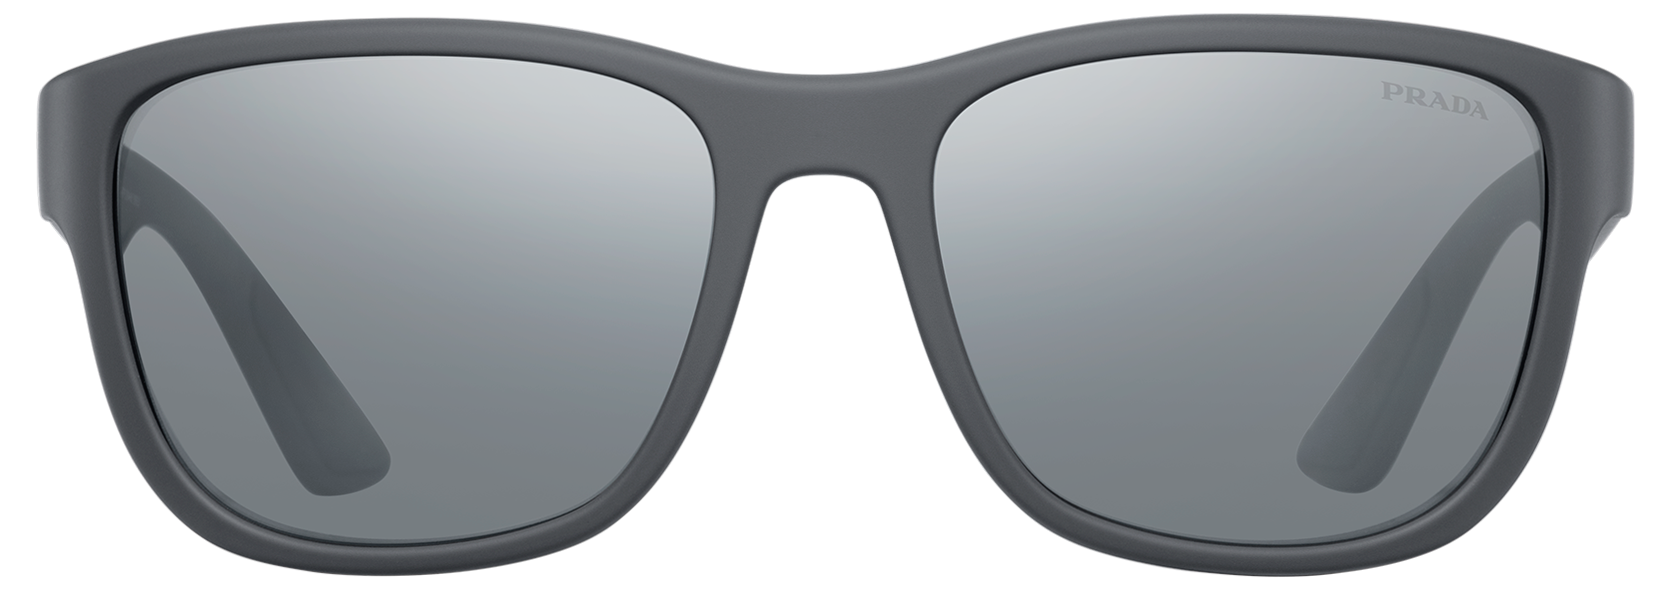 Prada солнцезащитные очки PNG фоновое изображение